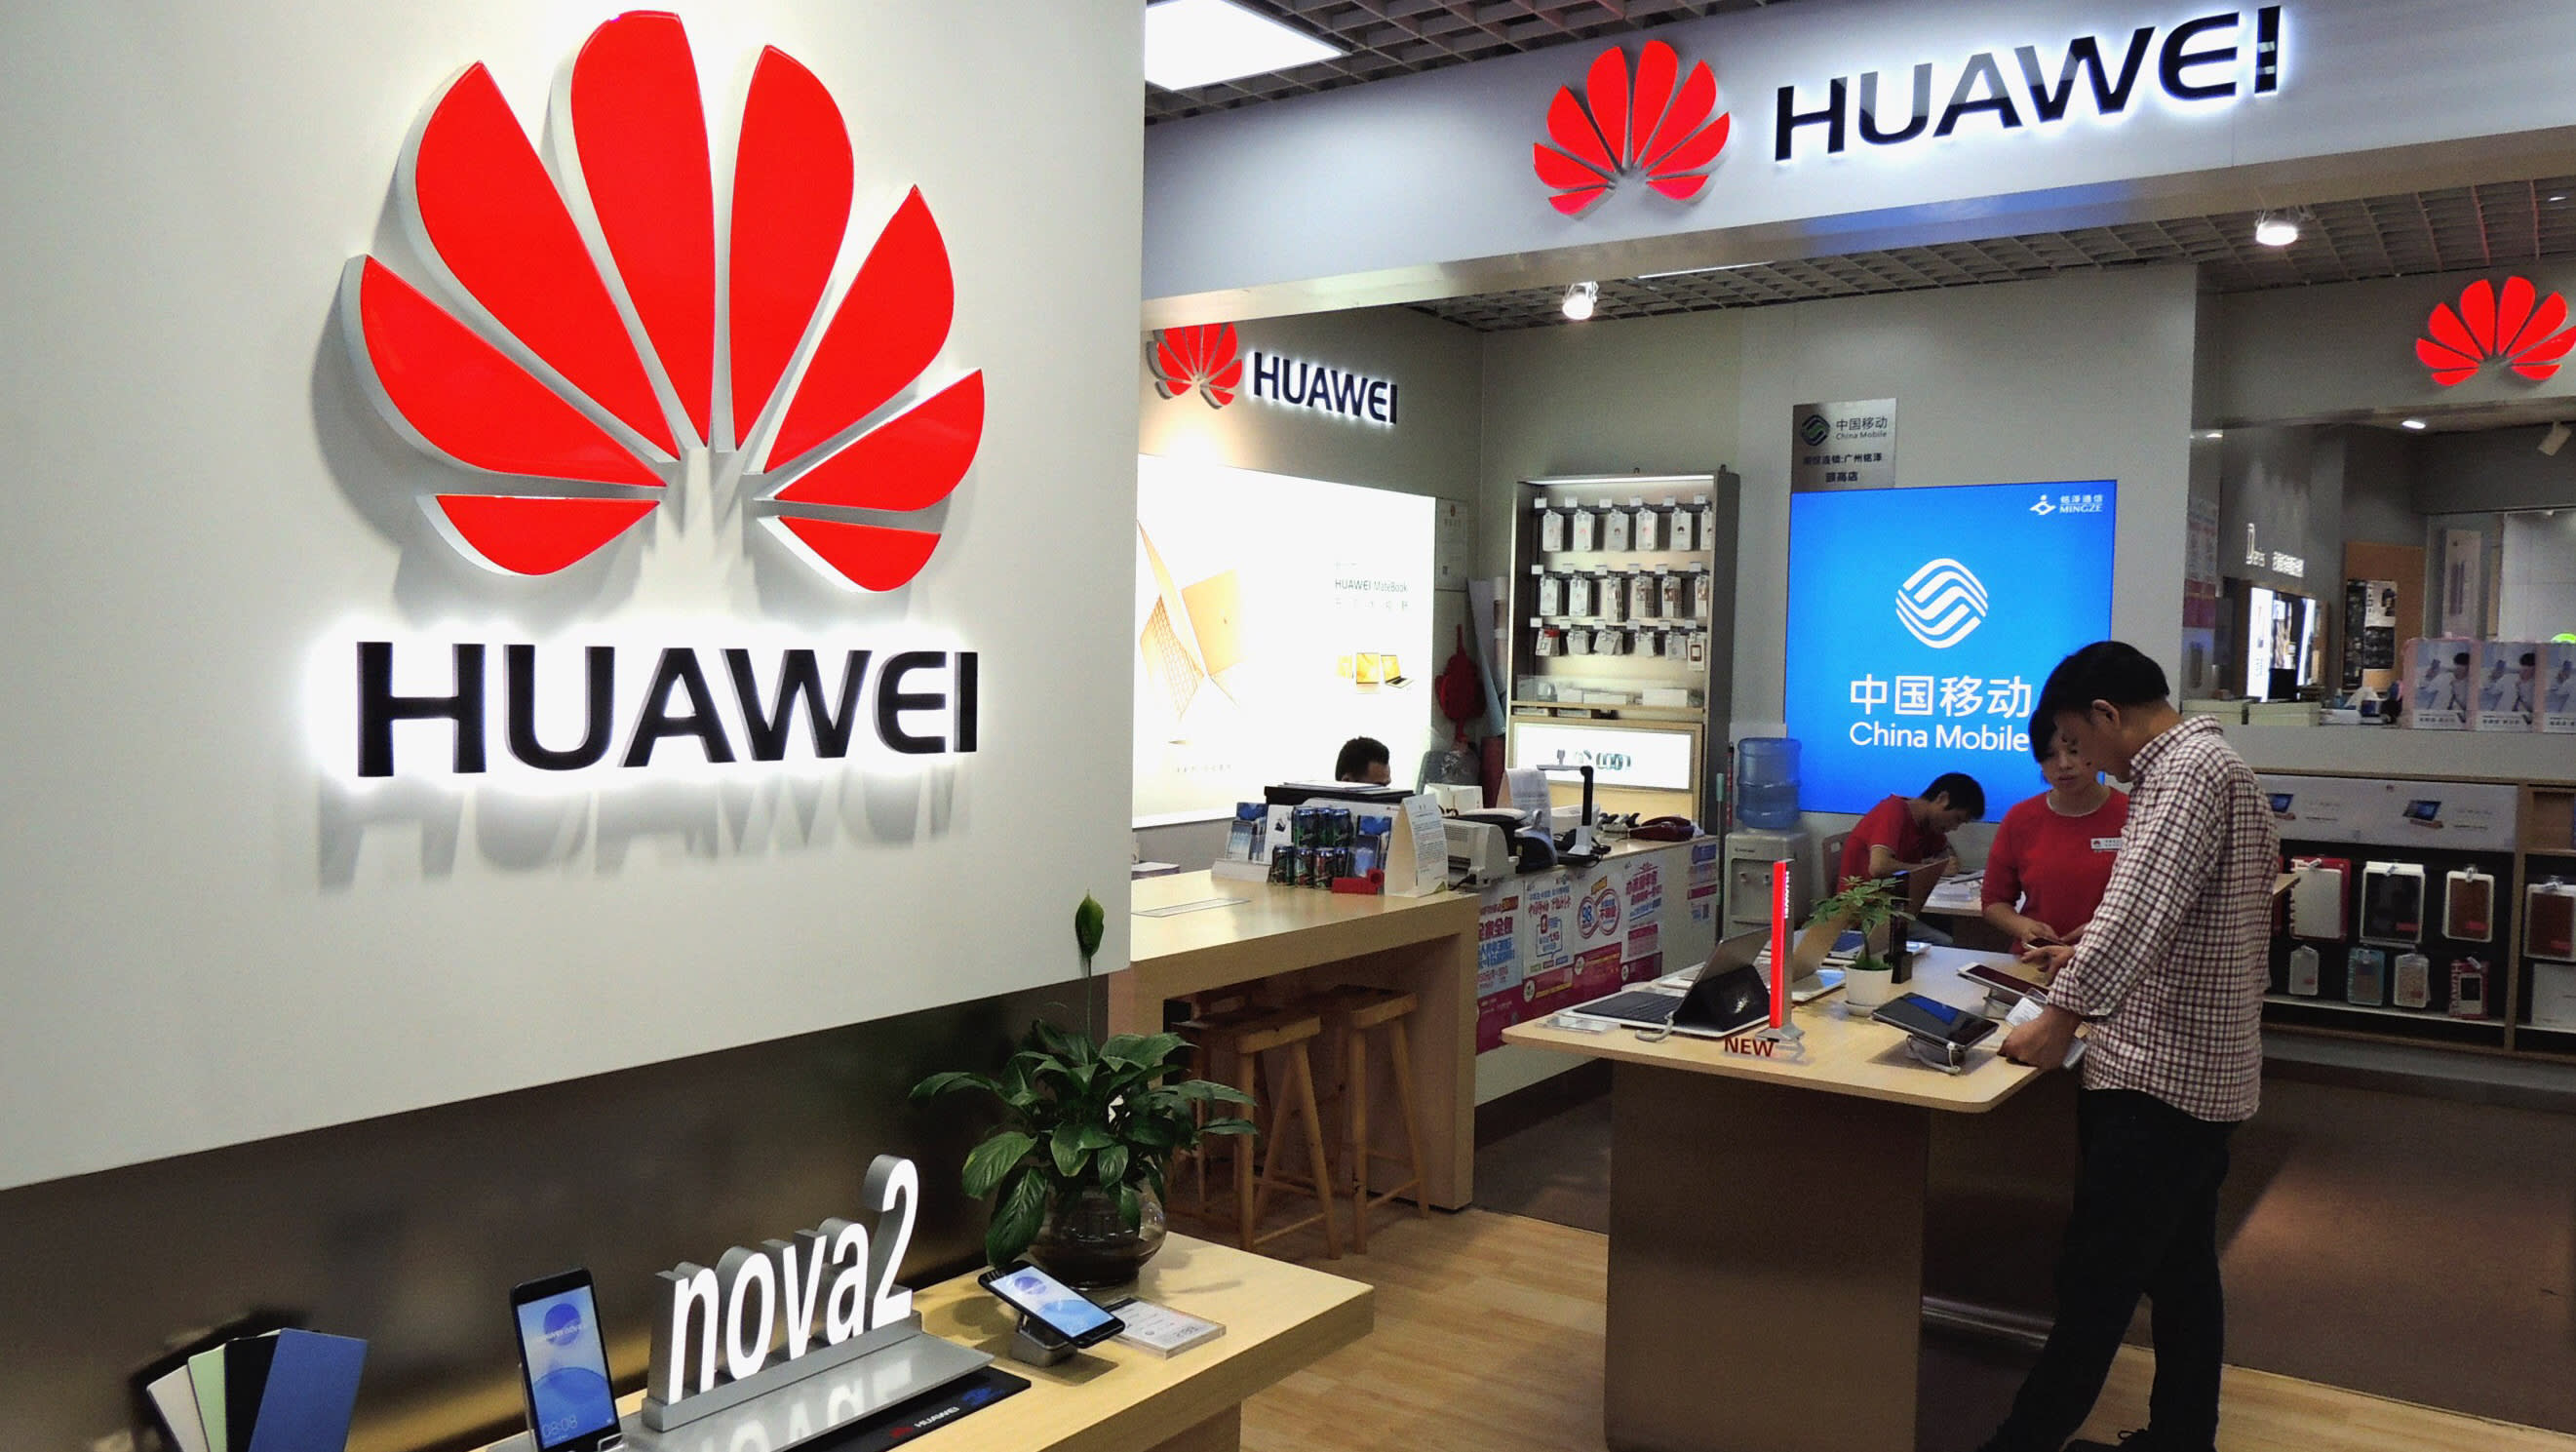 USA ponownie przełożyli sankcje przeciwko Huawei - po raz trzeci